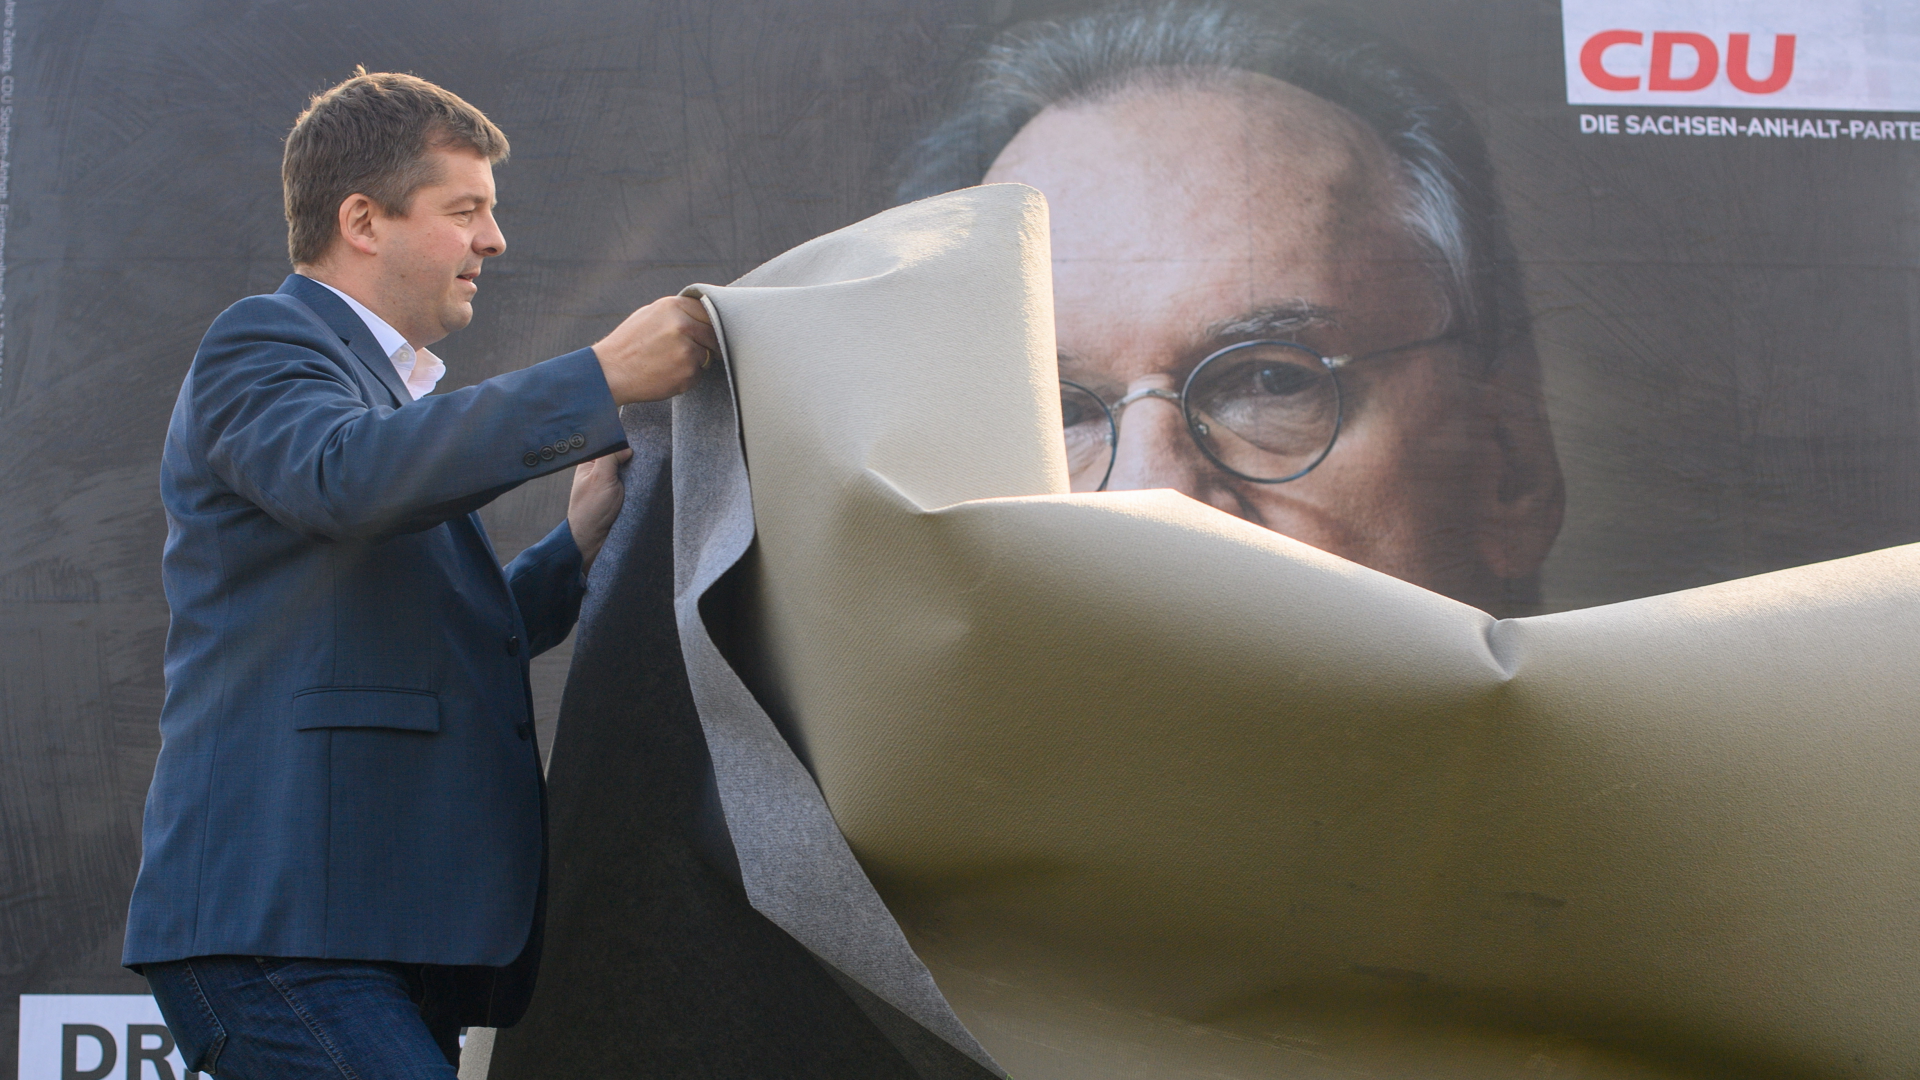  Sven Schulze, Vorsitzender der CDU Sachsen-Anhalt, enthüllt ein Wahlplakat der CDU, auf dem ein Porträt des Ministerpräsidenten des Landes Sachsen-Anhalt zu sehen ist | dpa